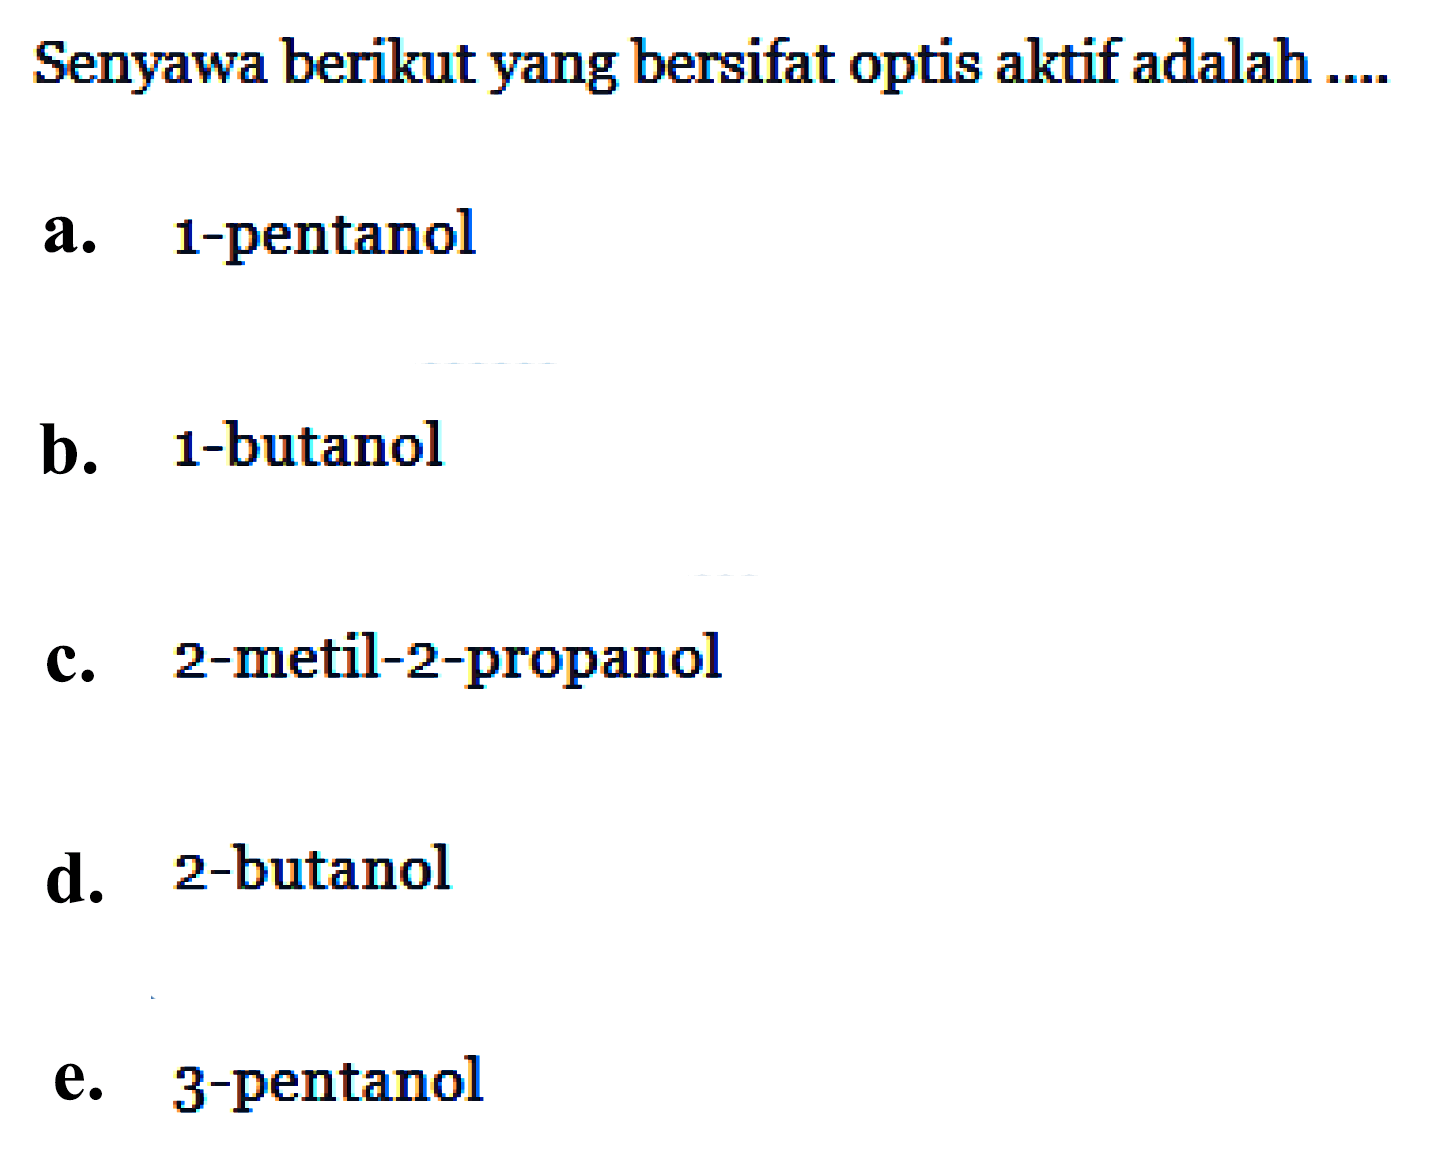 Senyawa berikut yang bersifat optis aktif adalah .... a. 1-pentanol b. 1-butanol c. 2-metil-2-propanol d. 2-butanol e. 3-pentanol